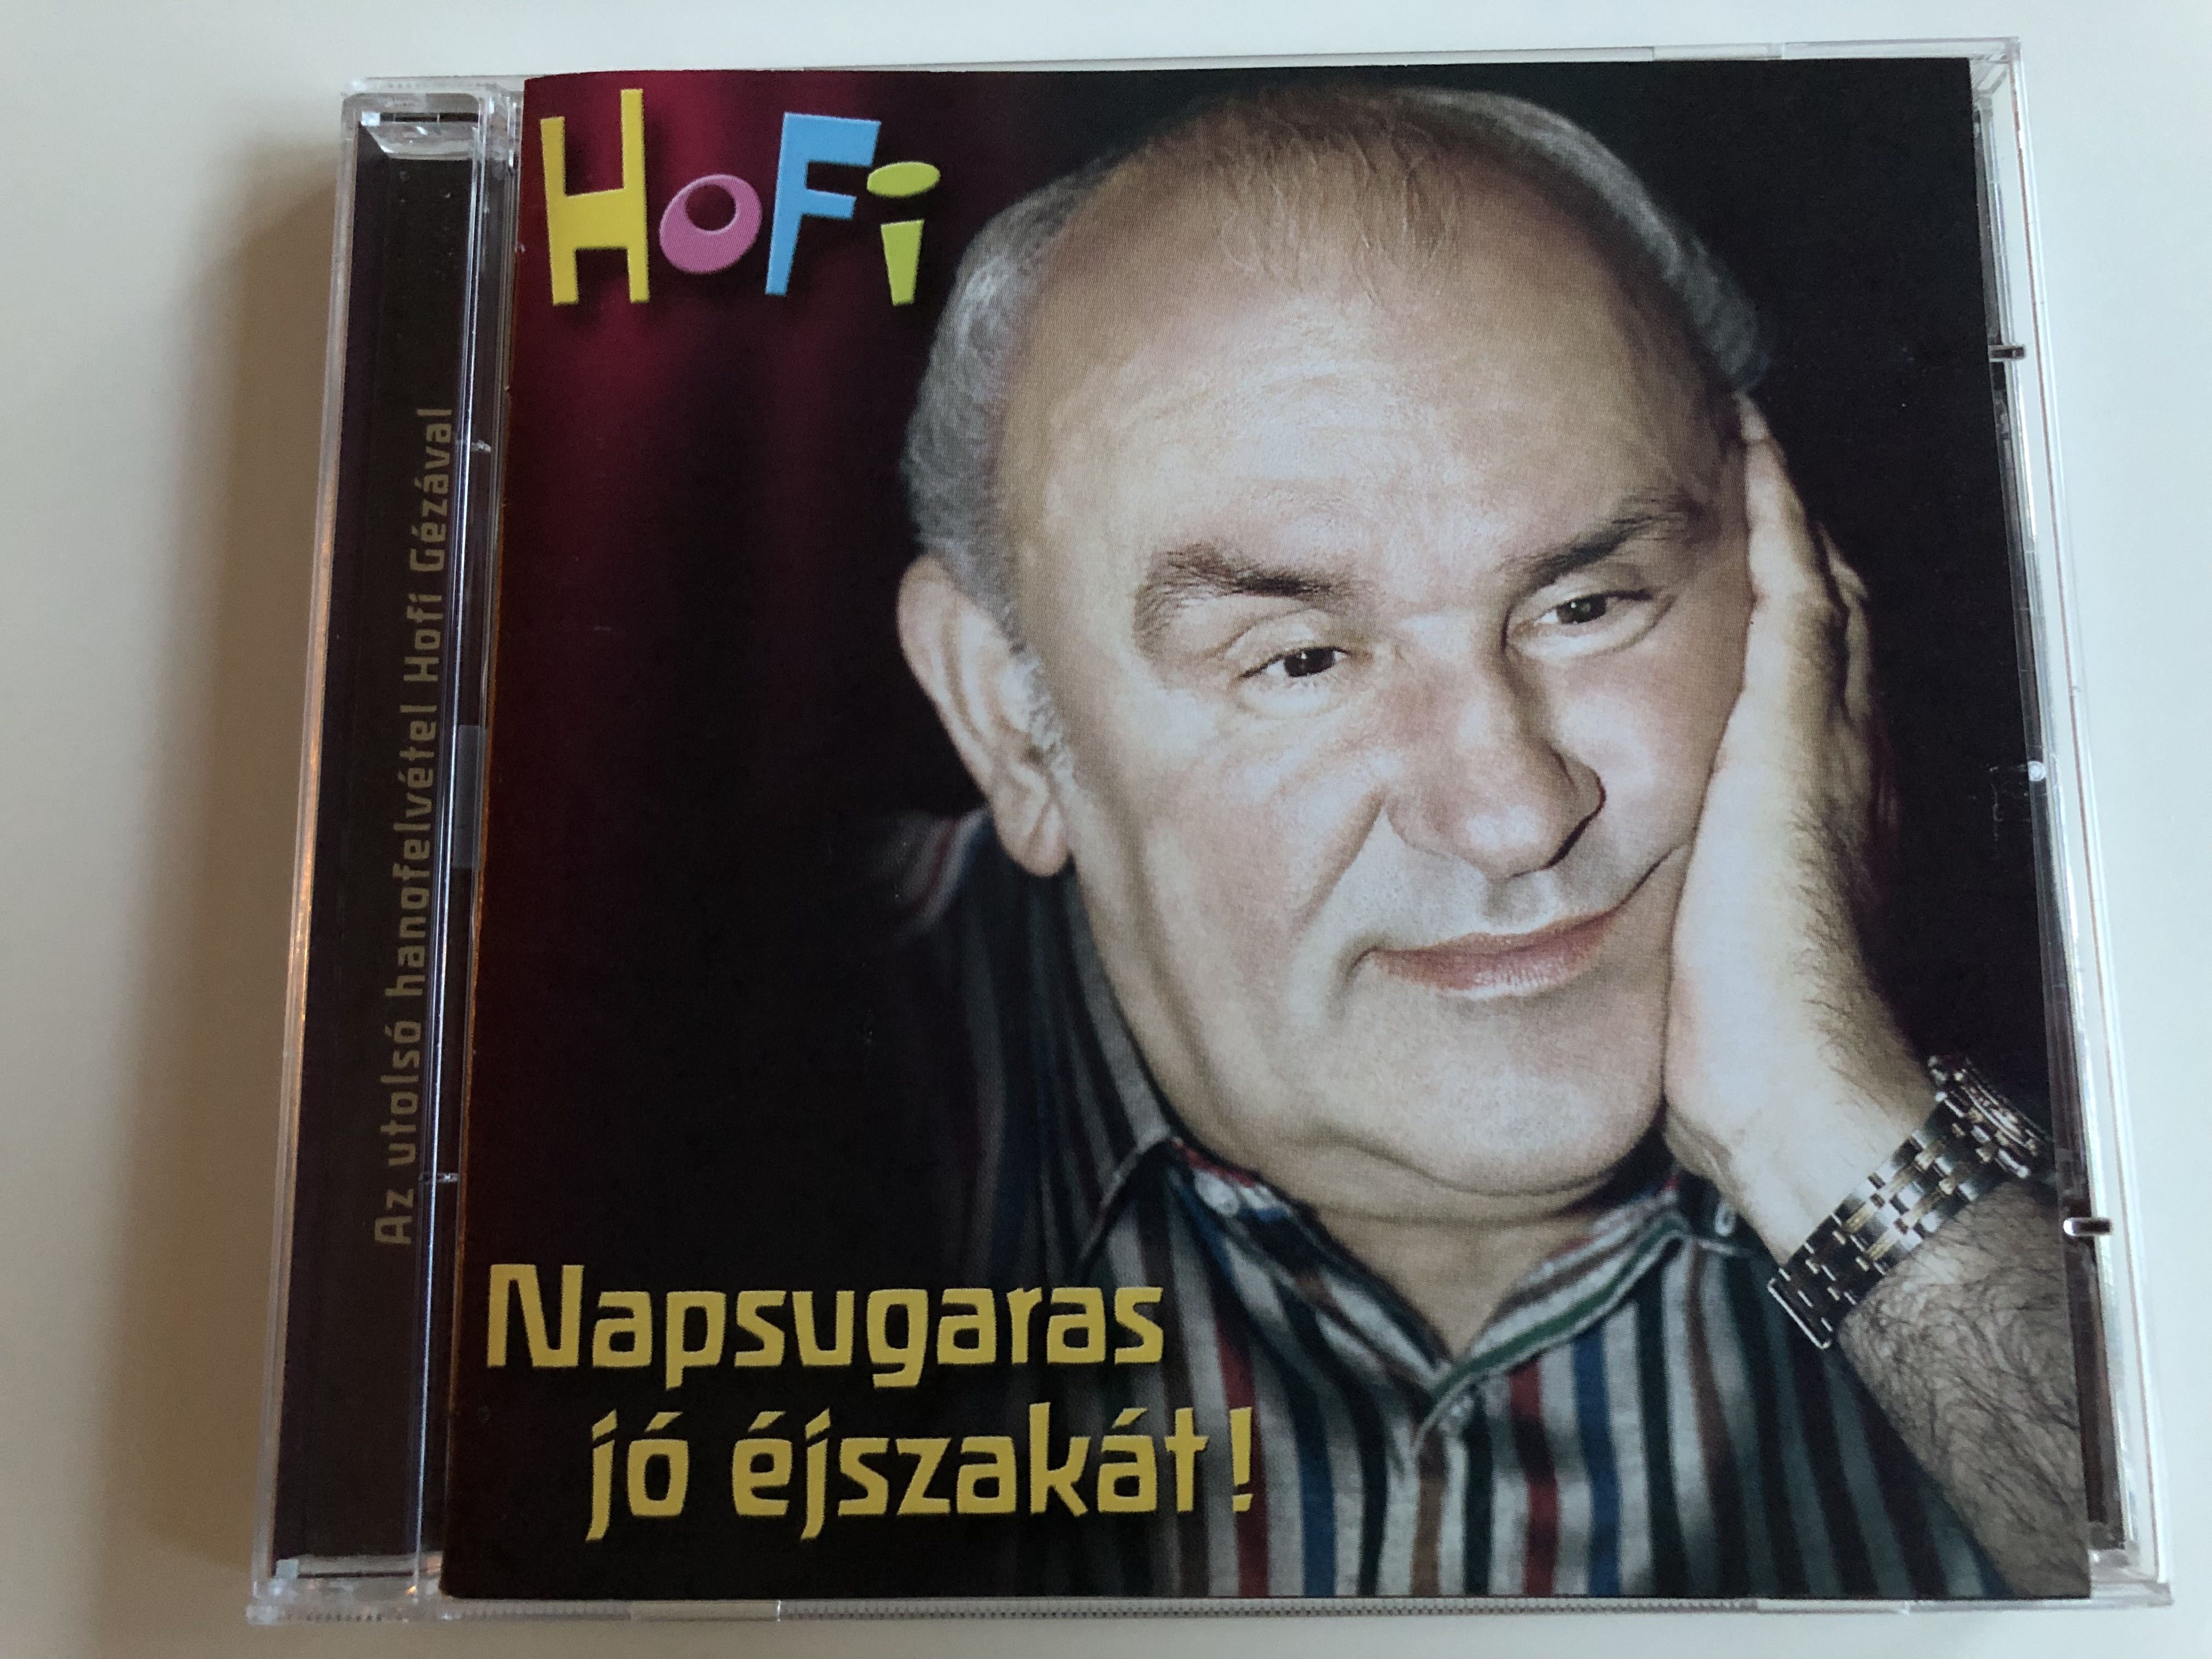 hofi-napsugaras-j-jszak-t-audio-cd-2002-hungaroton-hcd-71148-hungarian-stand-up-comedian-hofi-last-recording-1-.jpg